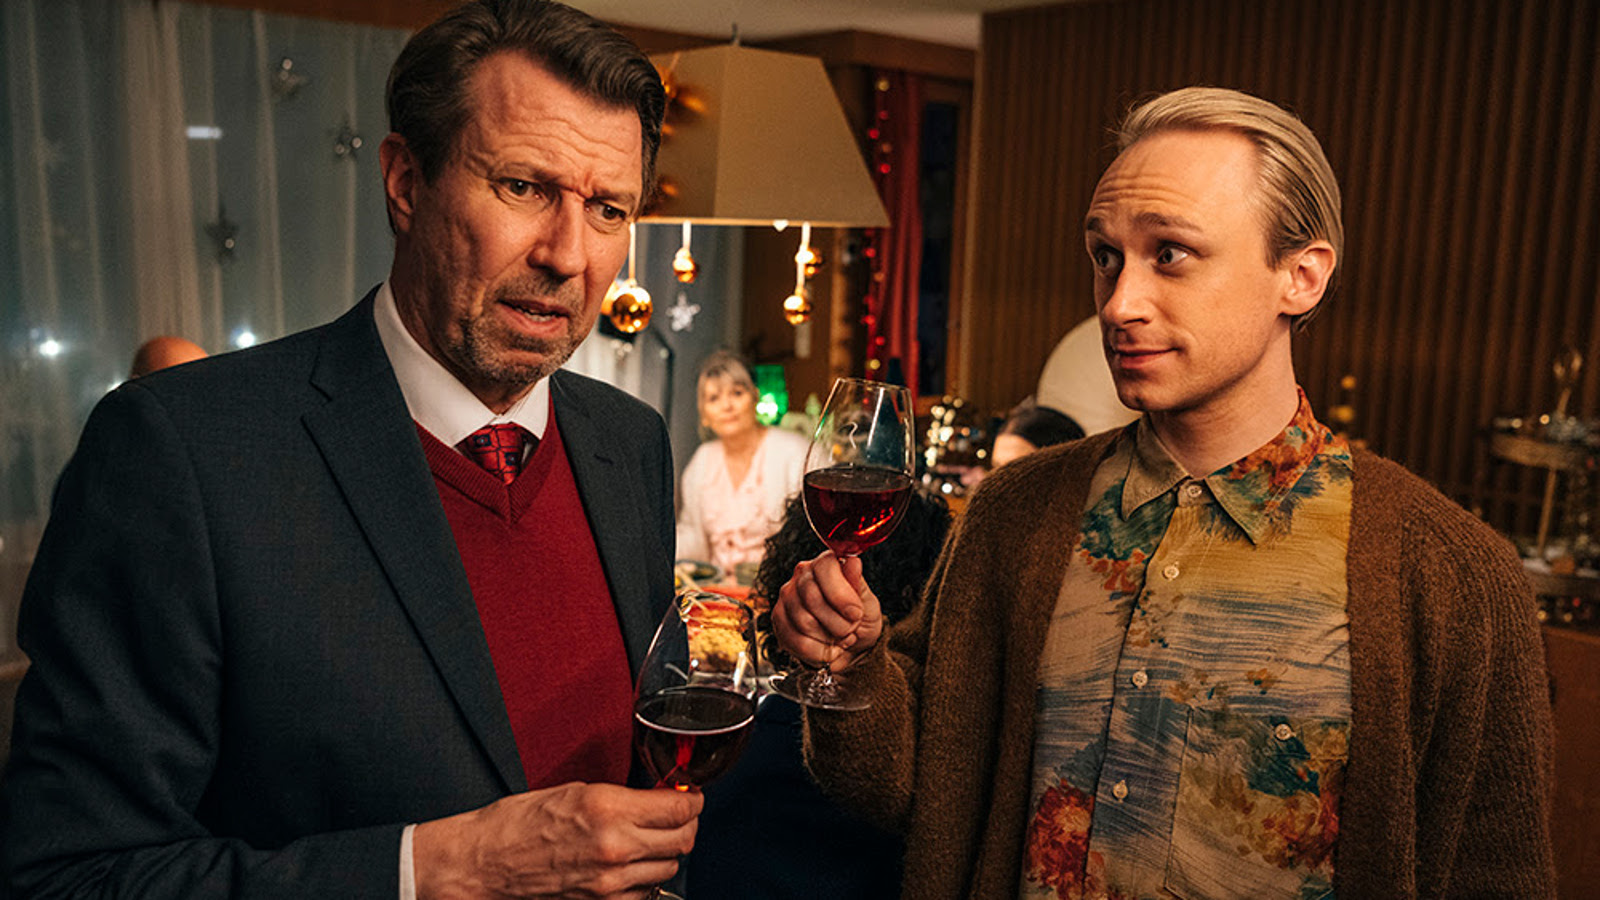 Kuvassa ovat Martti Suosalo ja Christoffer Strandberg puolivartalokuvassa seisomassa ravintolassa viinilasit kädessään.